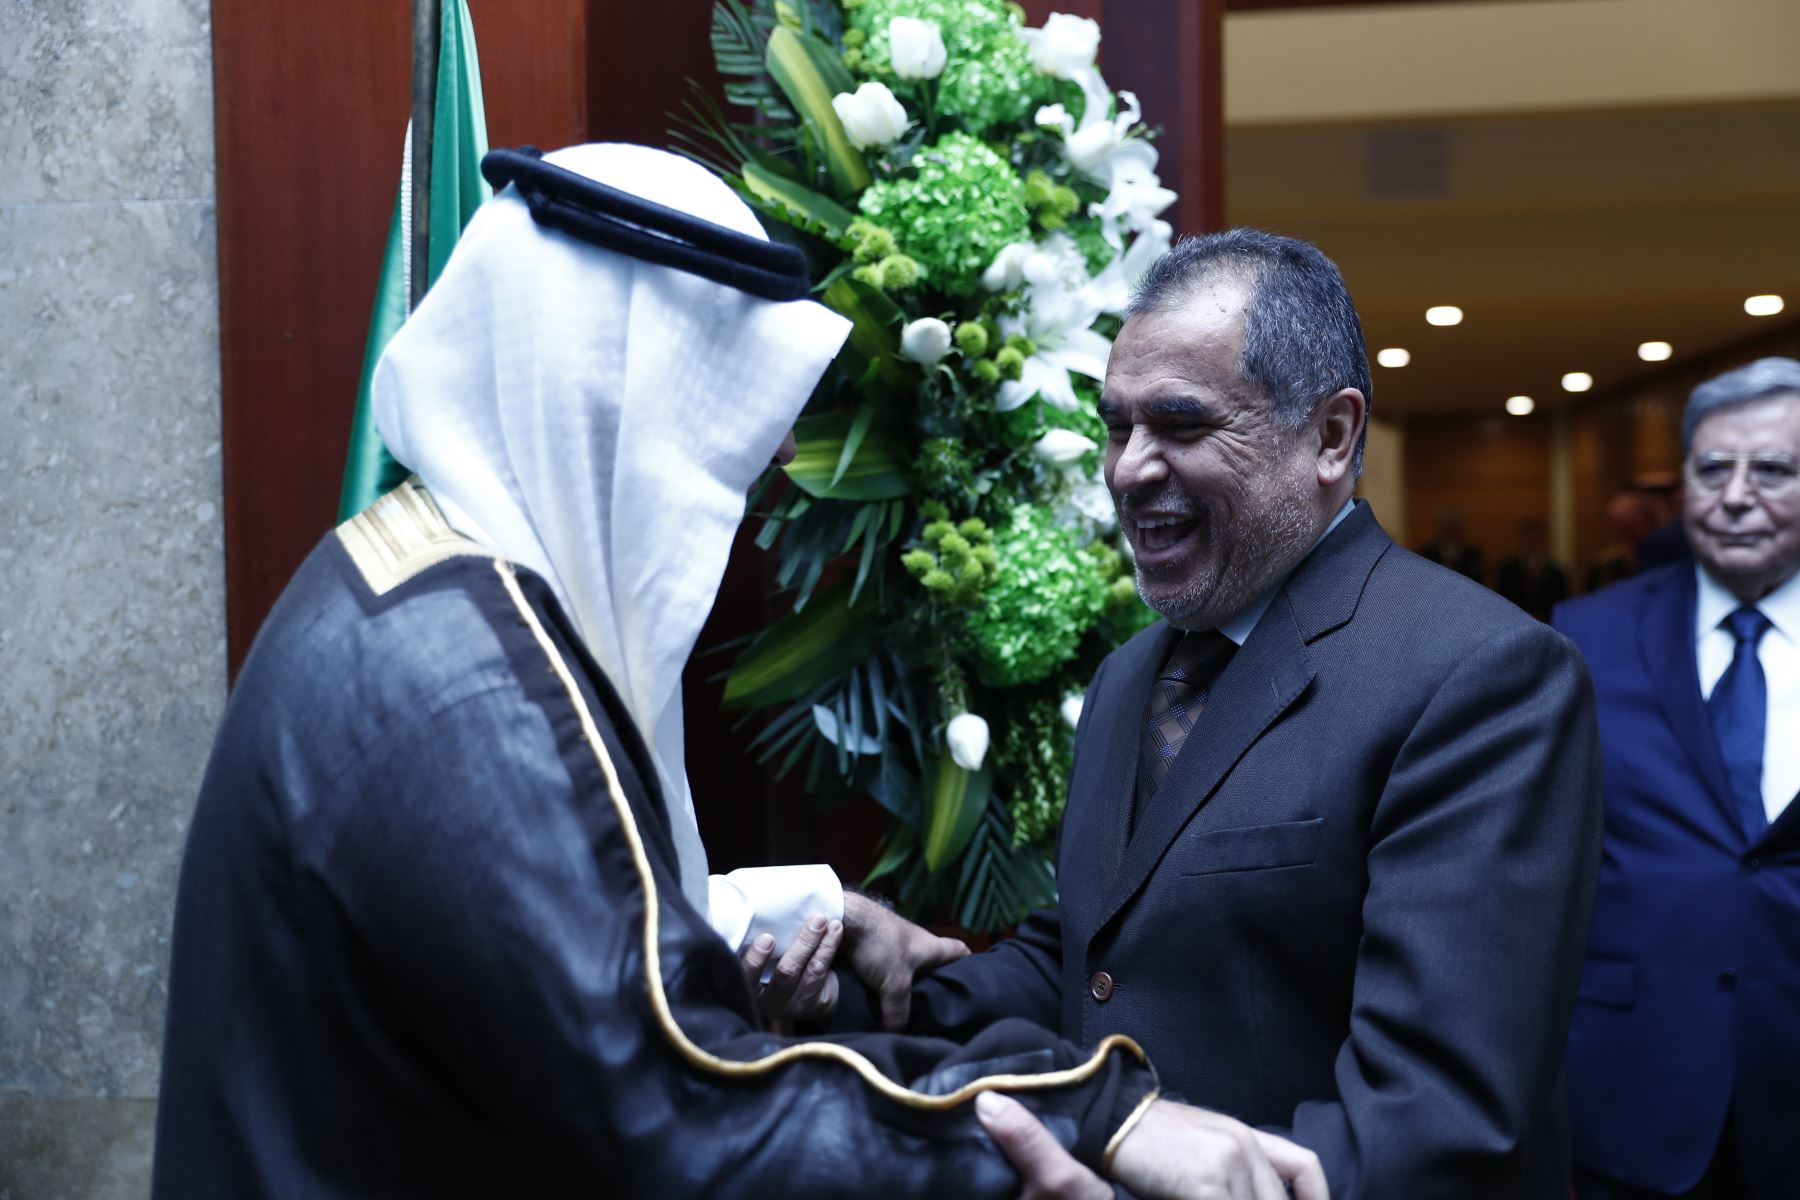 El ministro de Comercio Exterior y Turismo, Juan Carlos Mathews participó en la ceremonia especial por el Día Nacional de Arabia Saudita, realizado en el Swissotel. Foto: ANDINA/Daniel Bracamonte